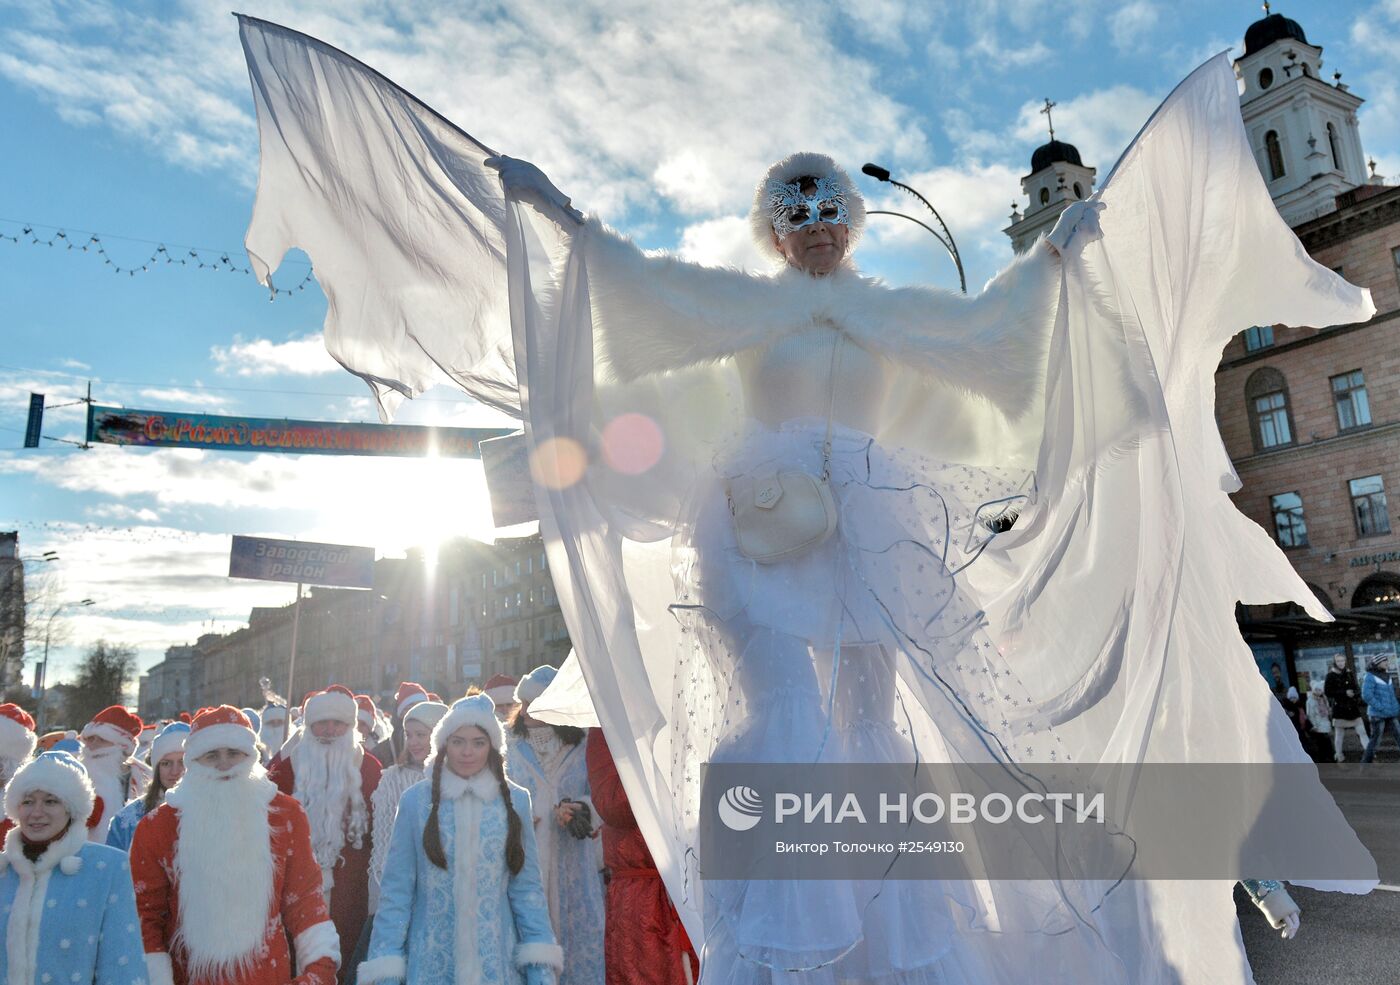 Шествие Дедов Морозов в Минске